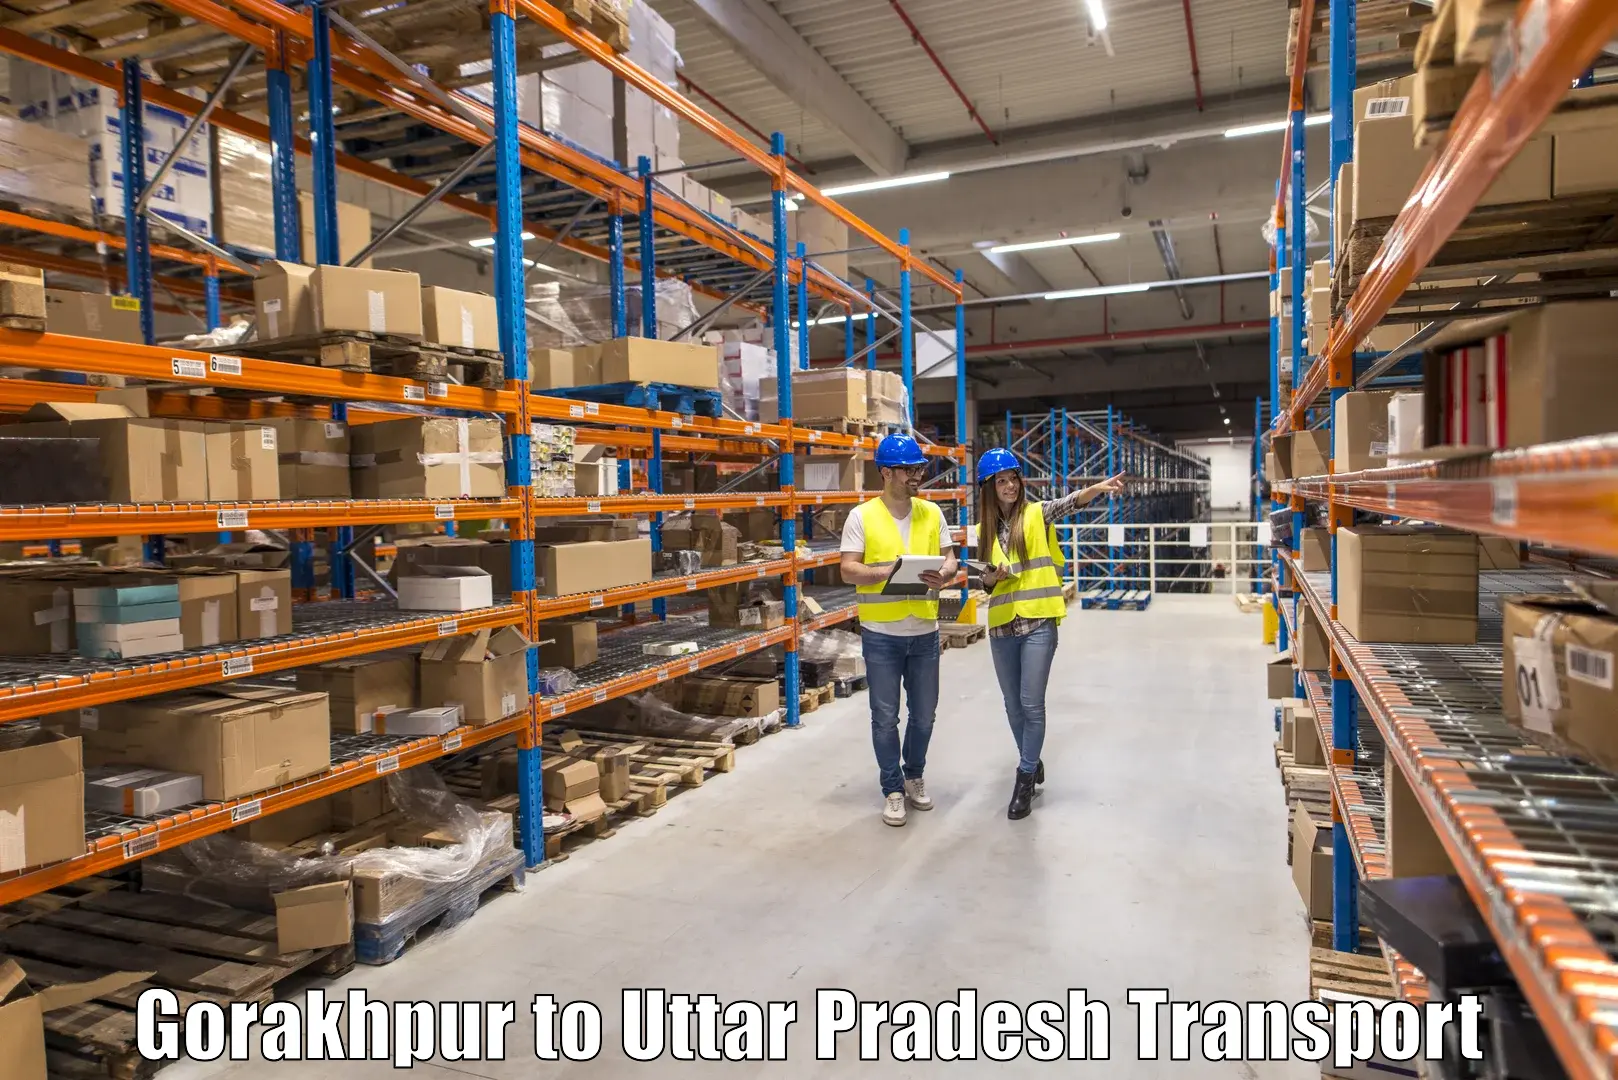 Transportation services Gorakhpur to Bhadohi